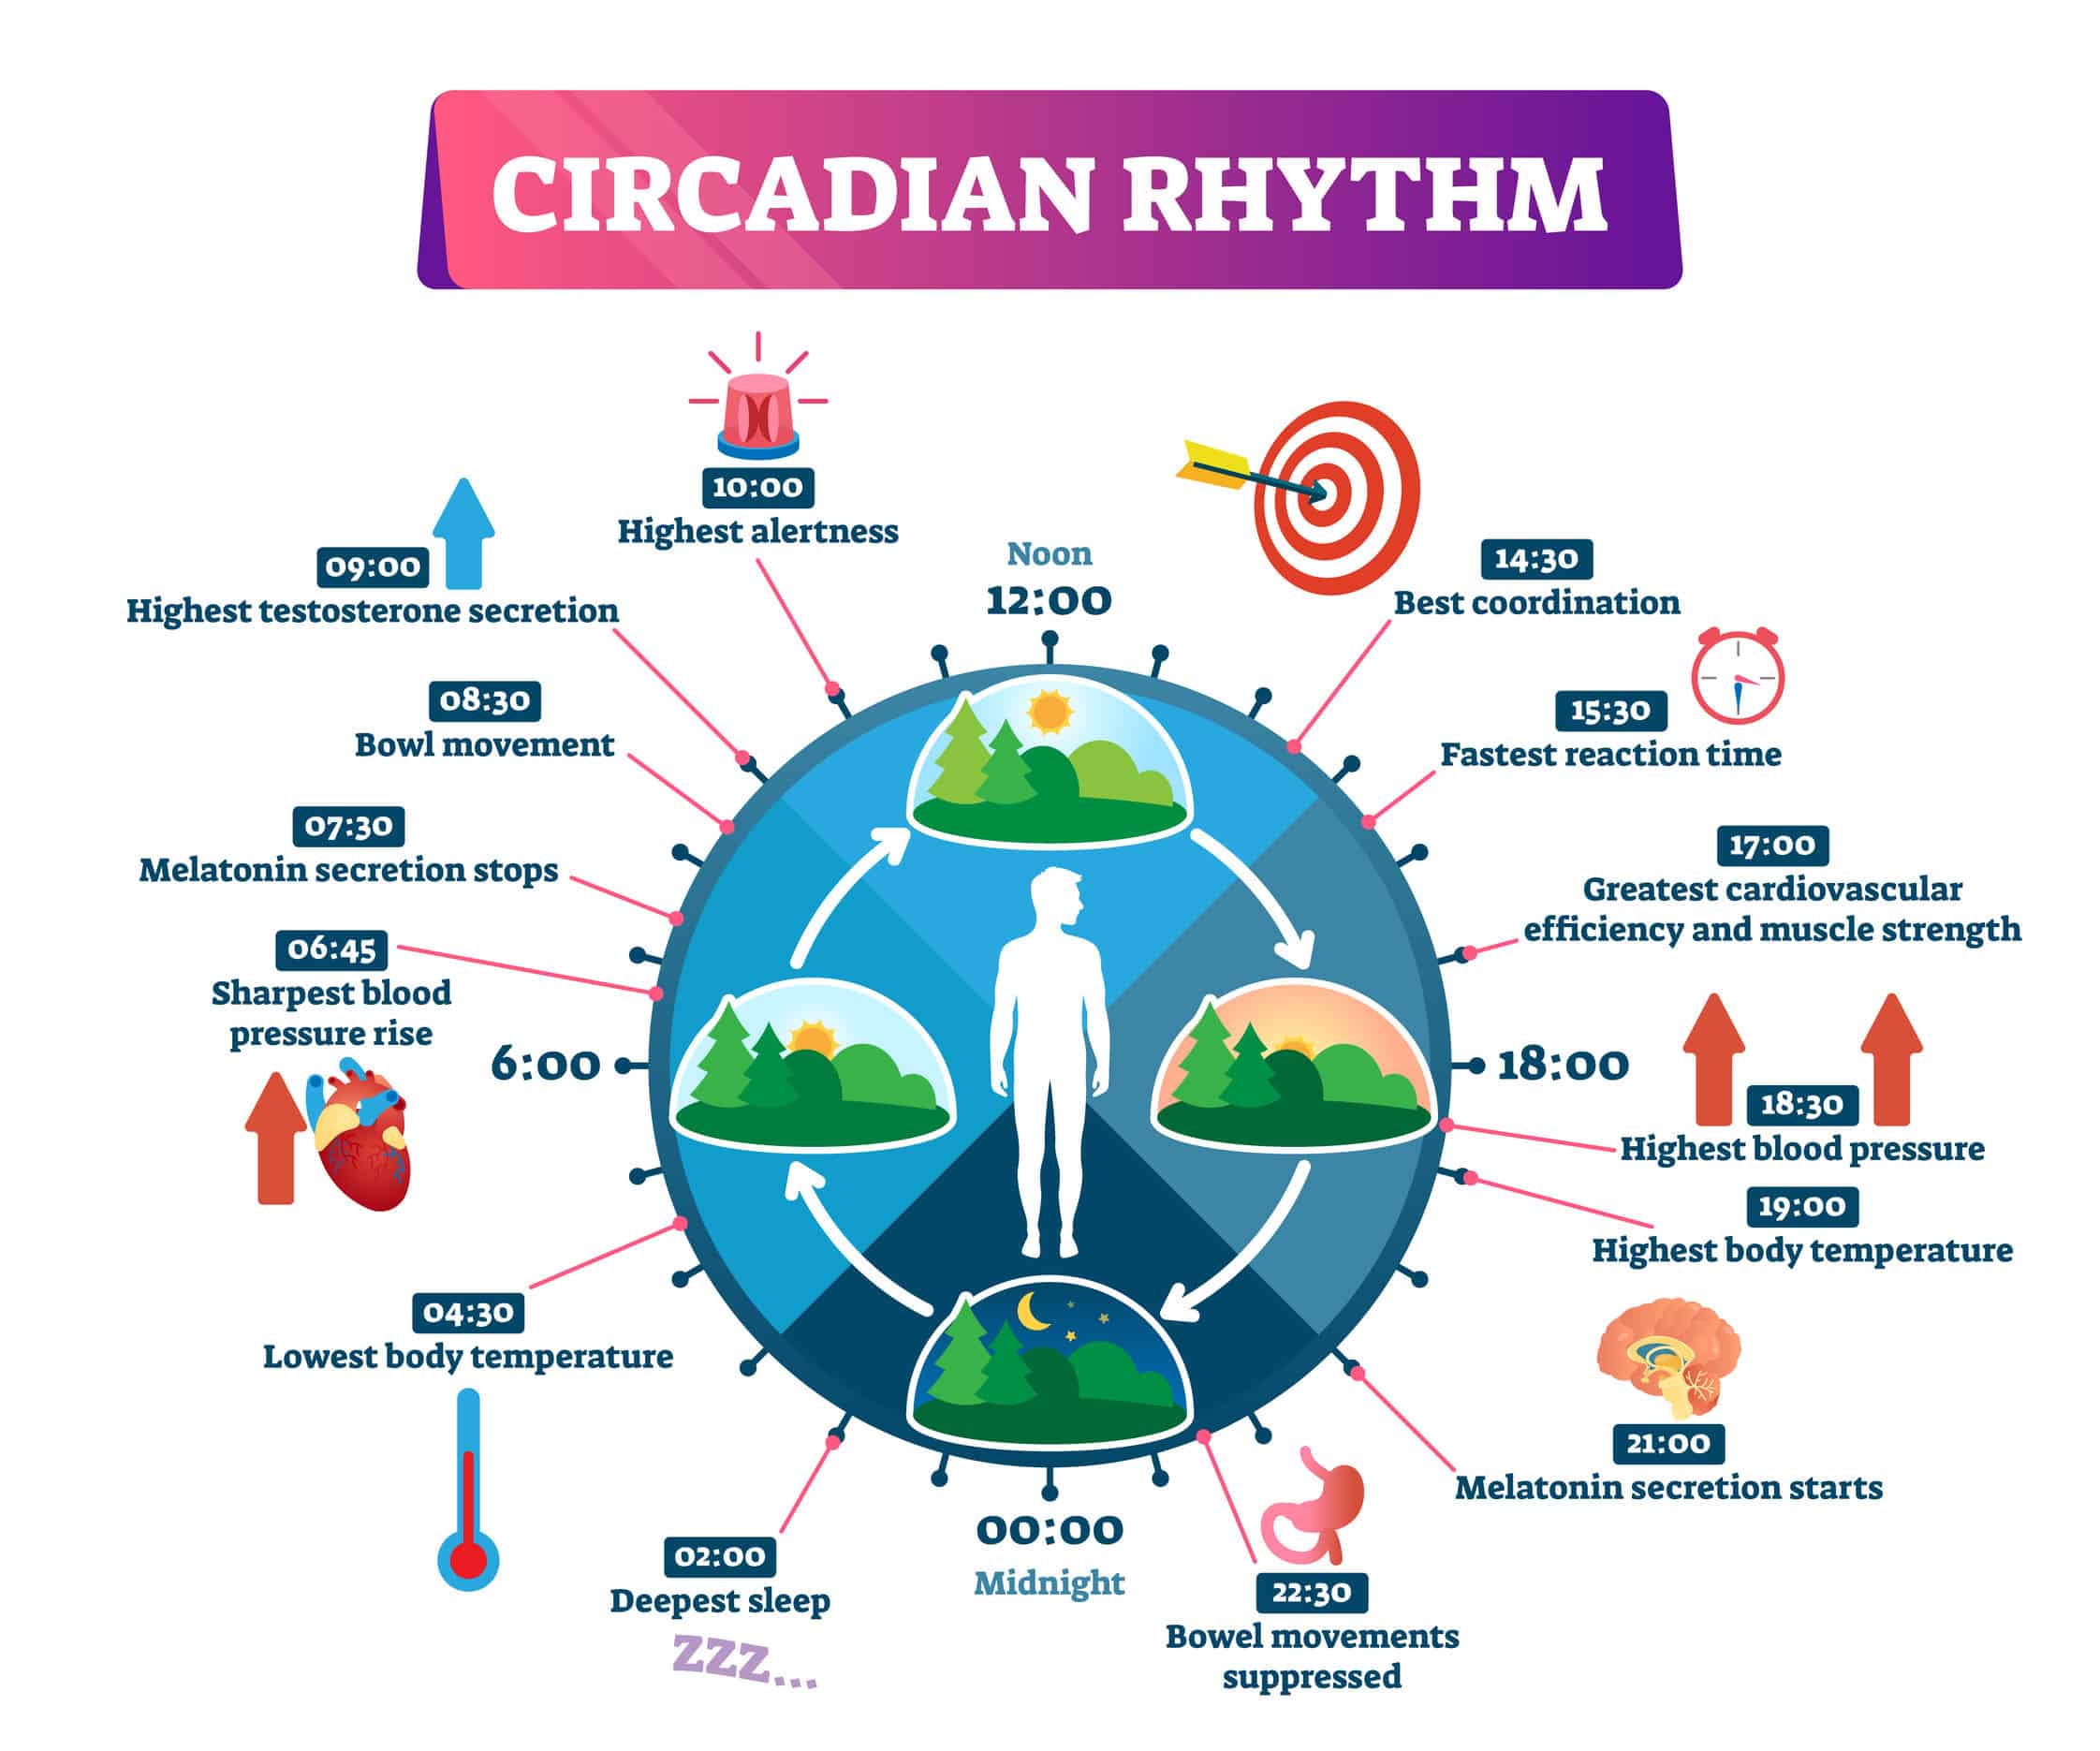 Circadian rhythm health